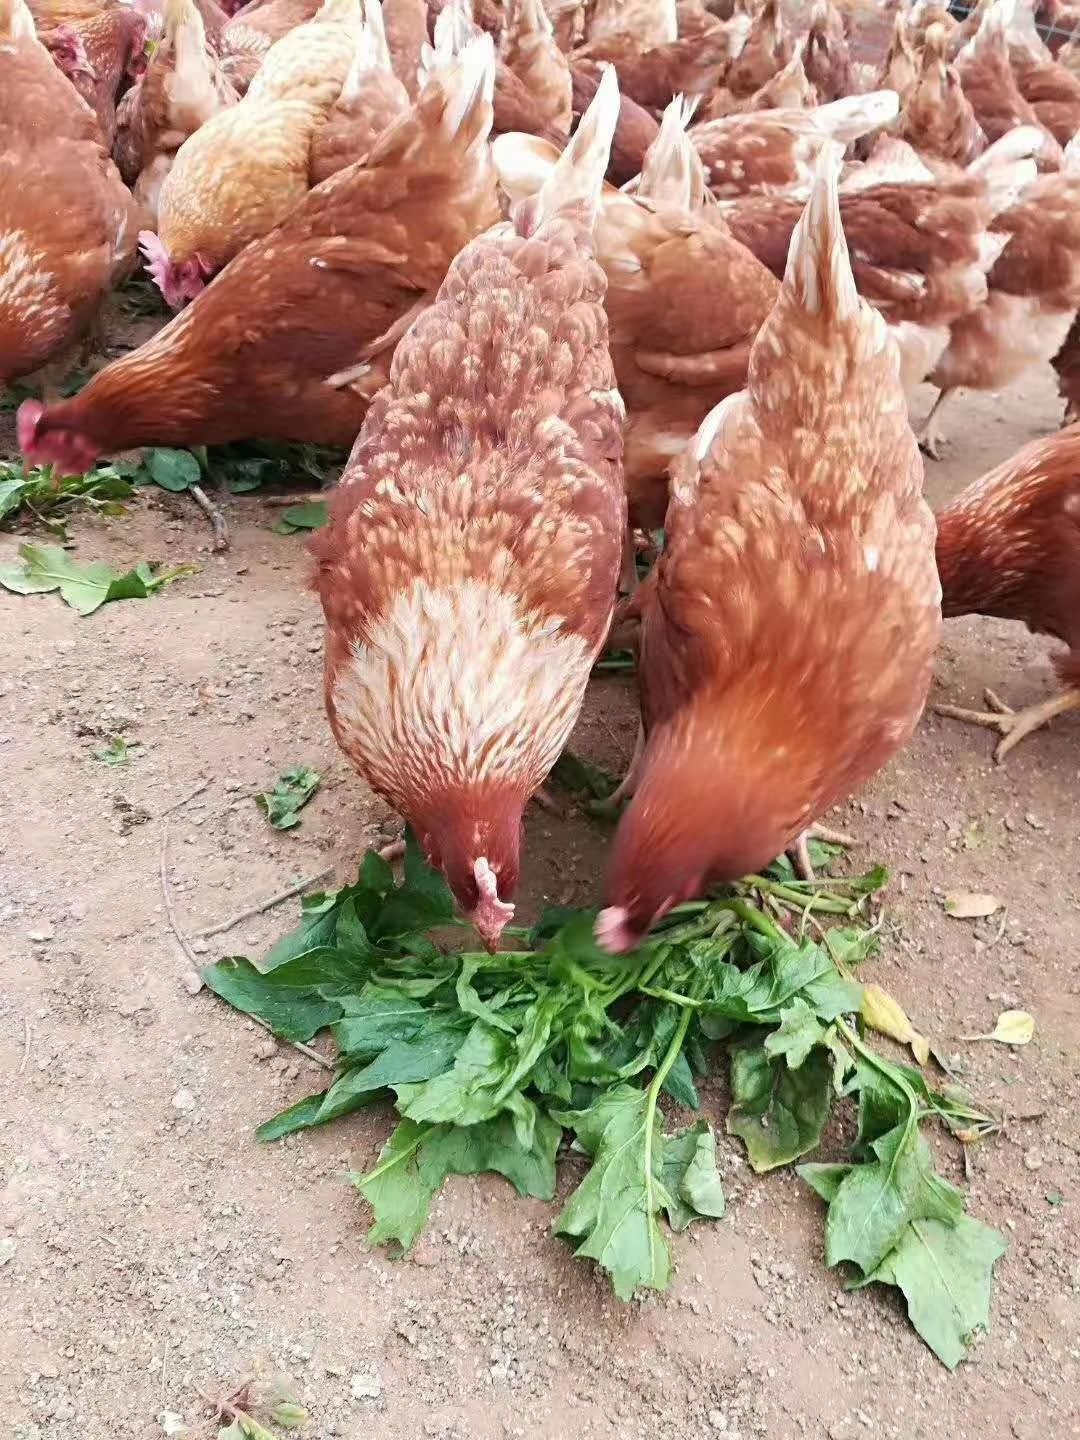 海兰褐蛋鸡饲养标准图片